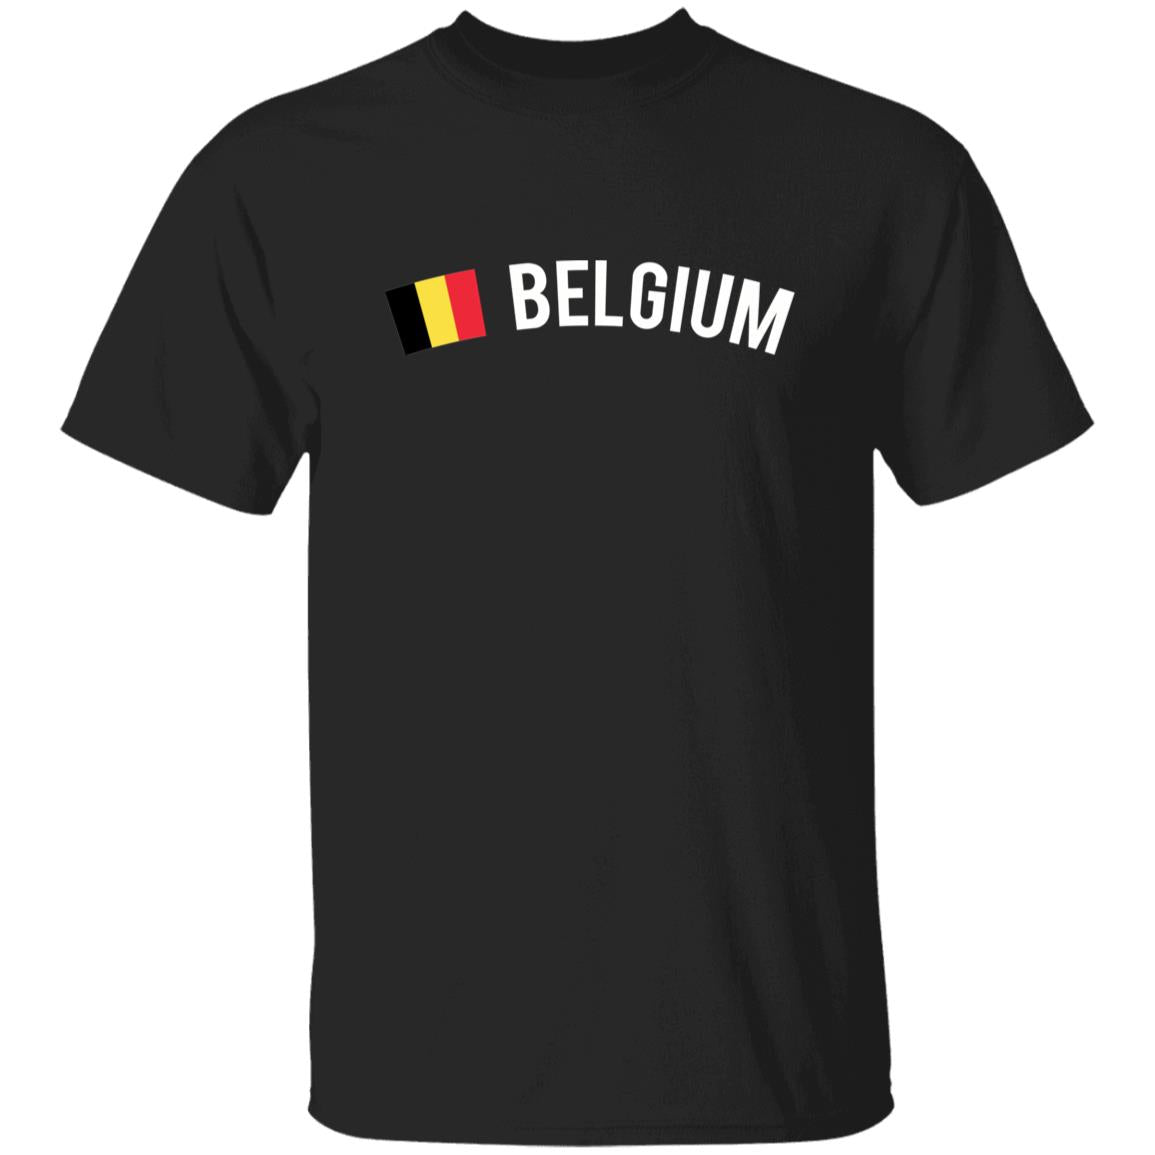 Belgium Unisex T-shirt gift Belgian flag tee Brussel White Black Dark Heather-Family-Gift-Planet